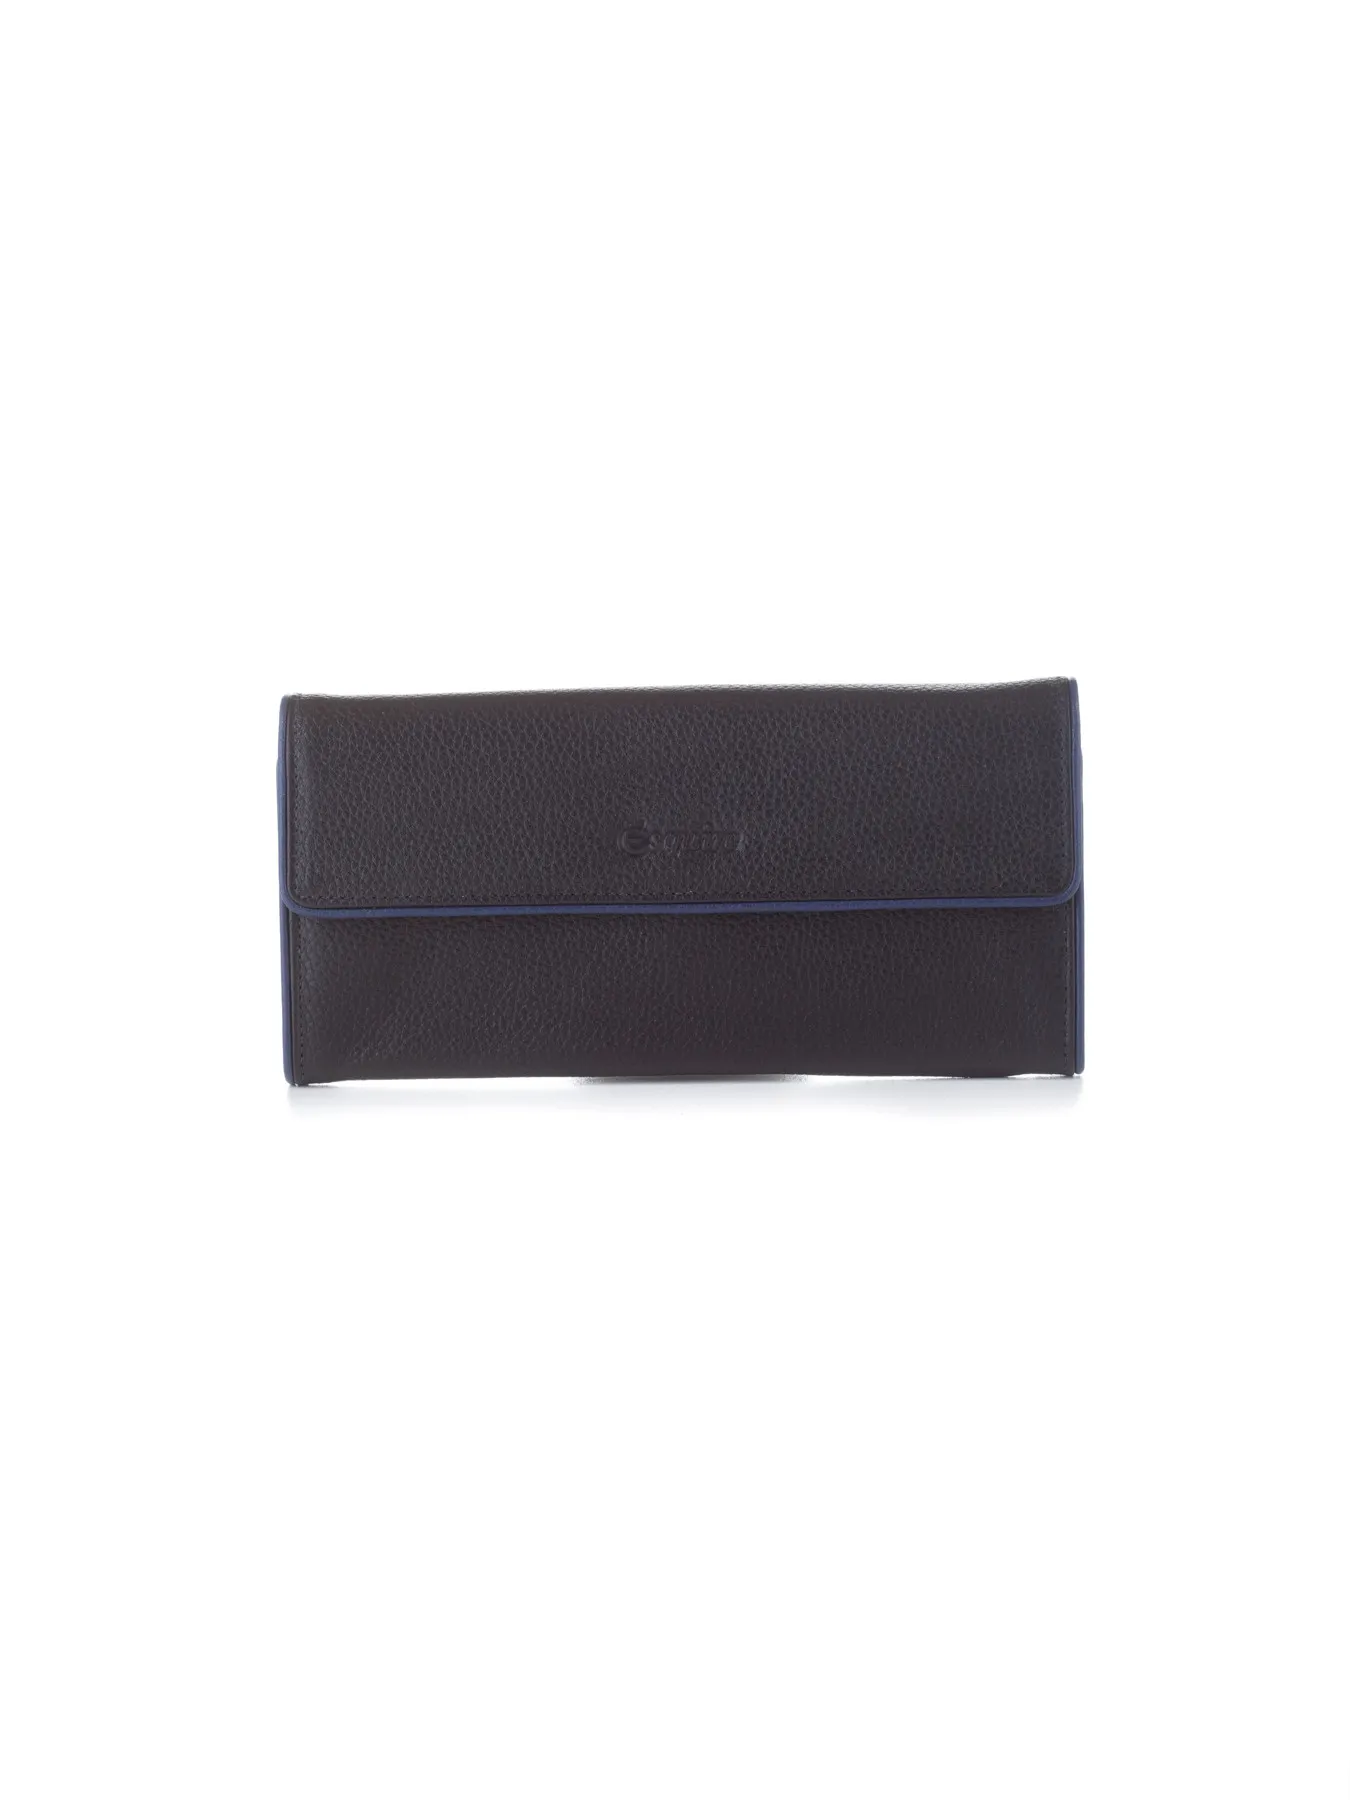 ESQUIRE Crnoplavi kožni novčanik sa RFID zaštitom 